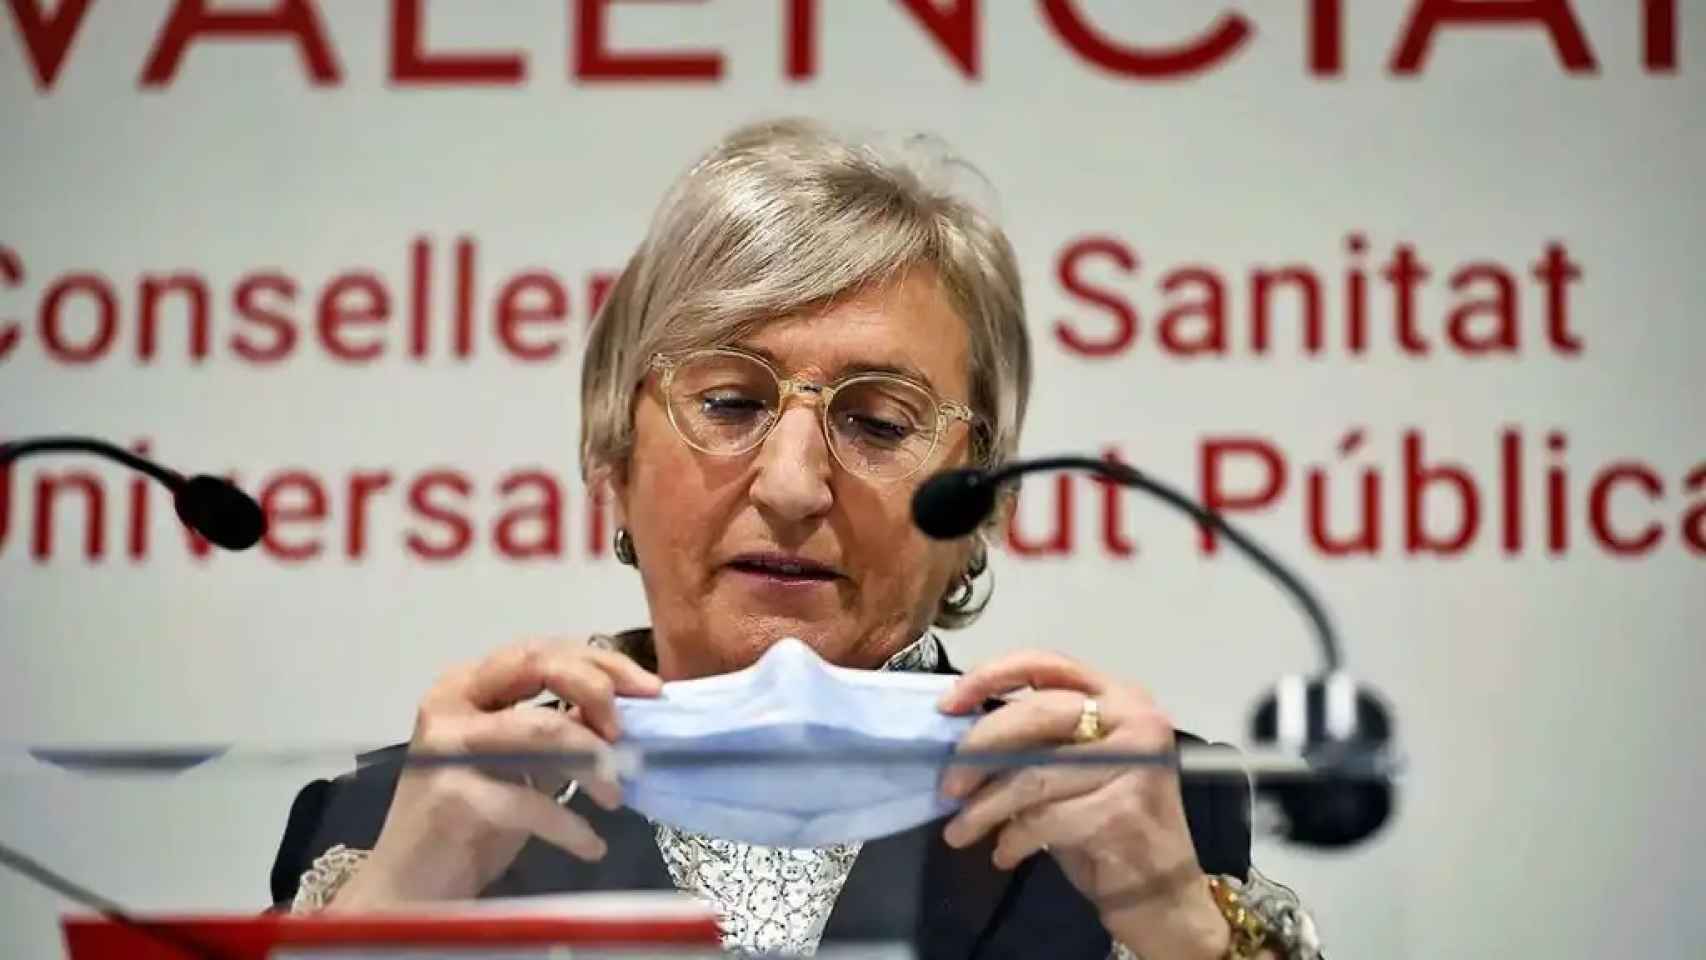 La consellera de Sanidad valenciana, Ana Barceló, en imagen de archivo.